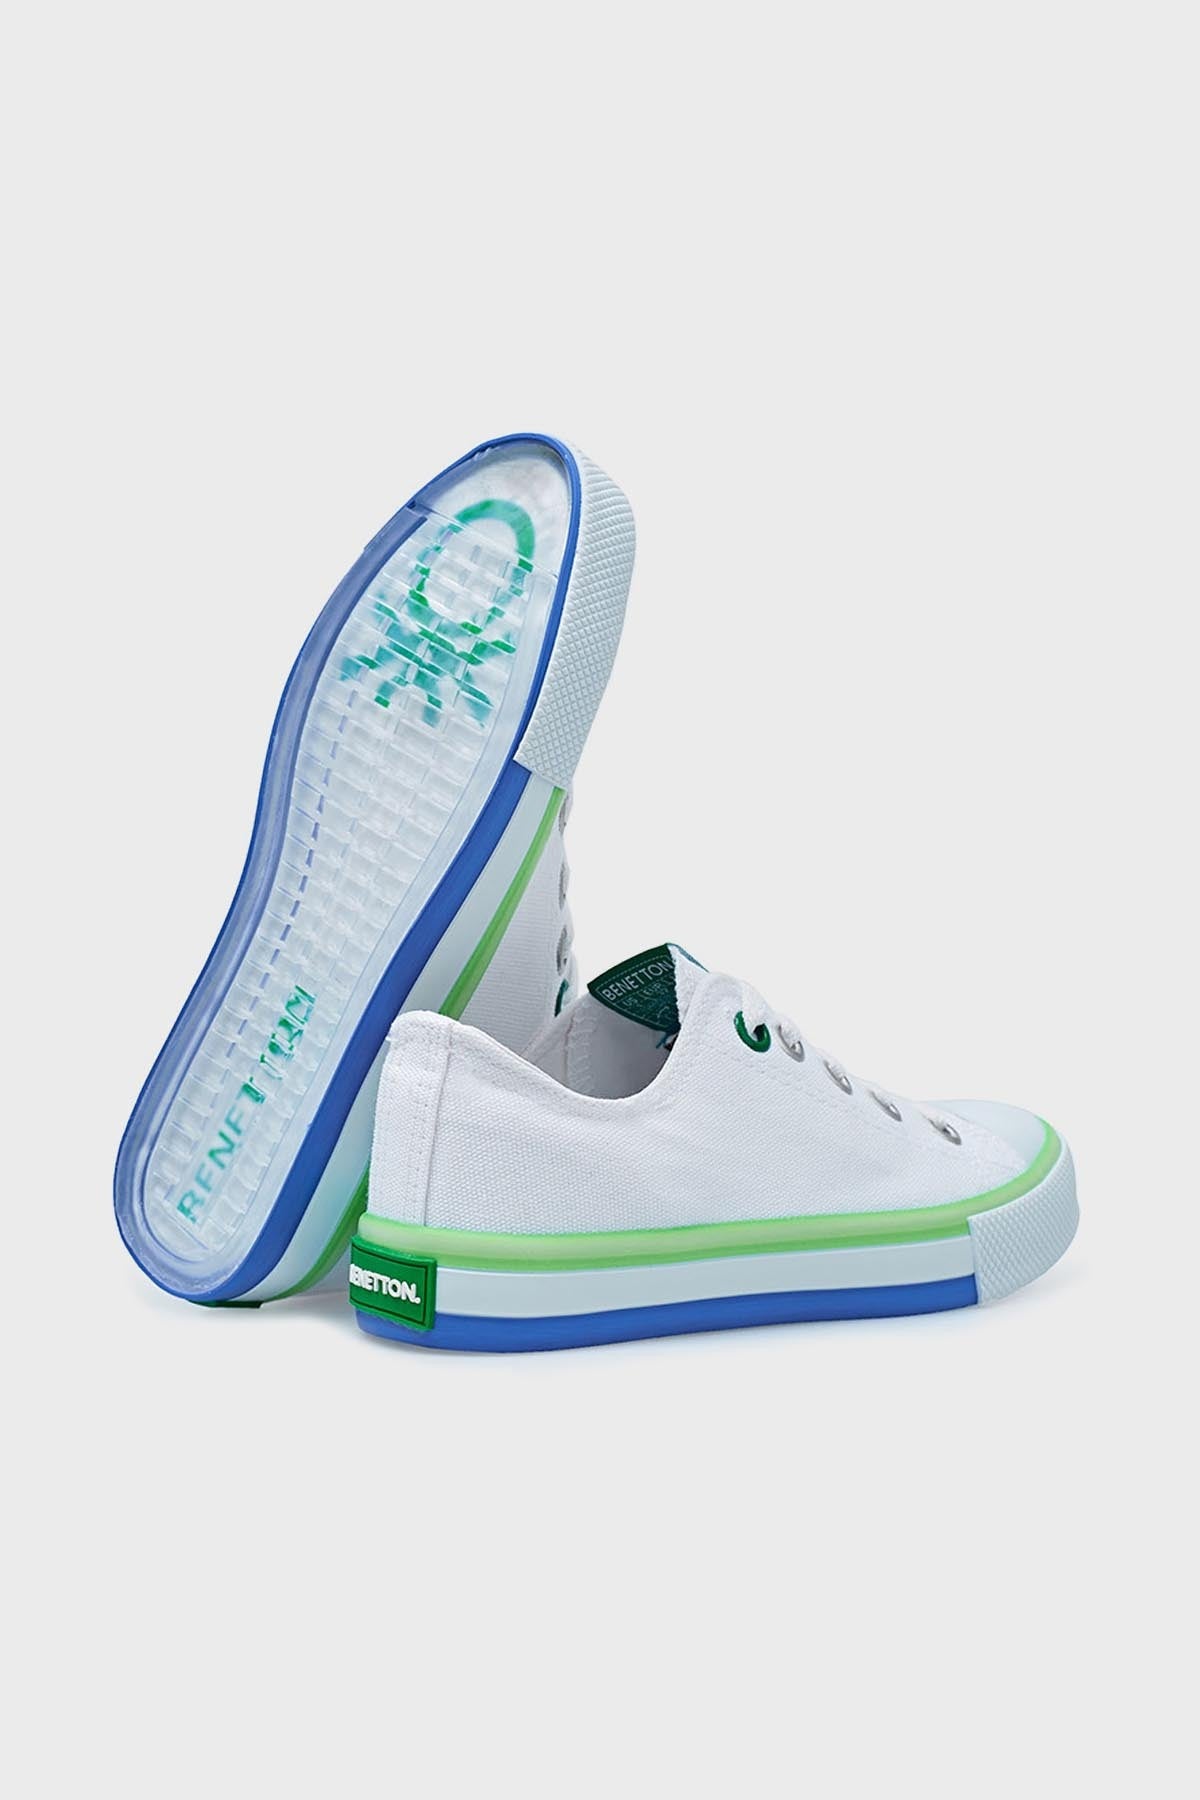 United Colors Of Benetton Sneaker Unisex Çocuk Ayakkabı BN-30175 BEYAZ-YEŞİL